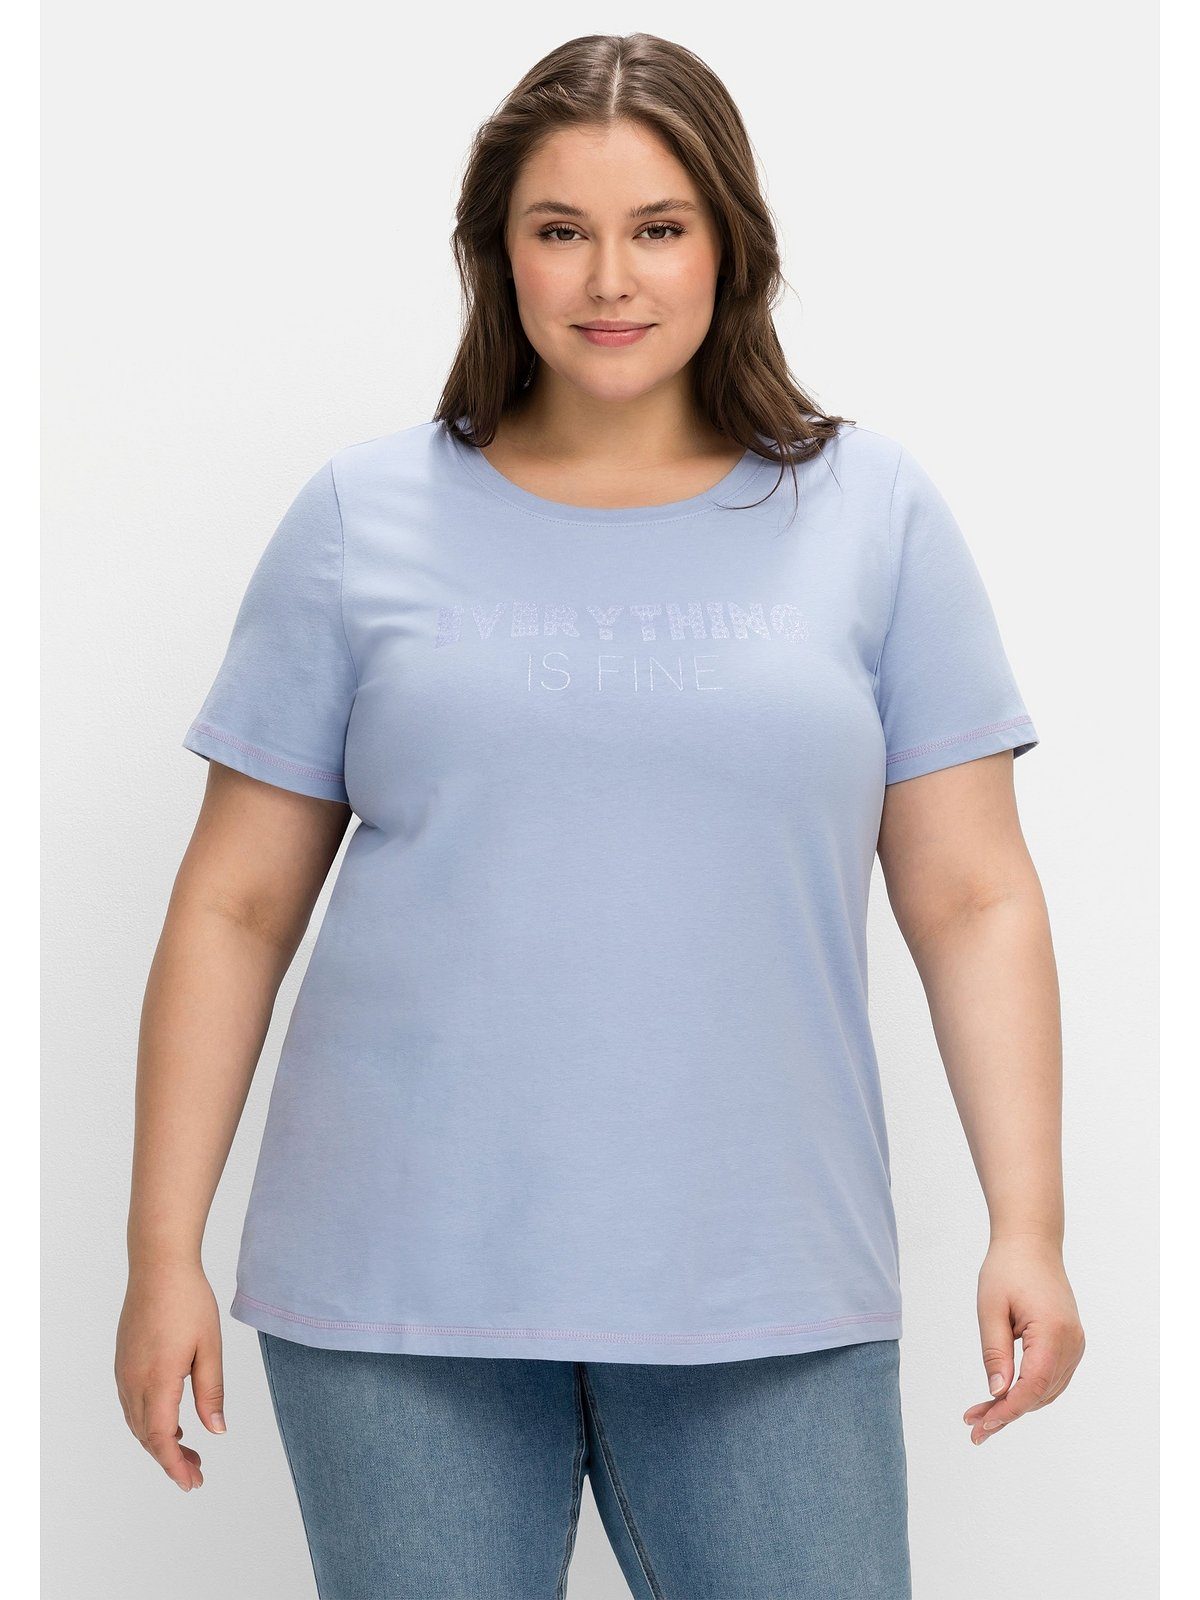 Sheego T-Shirt Große Größen mit Wordingprint, leicht tailliert mittelblau bedruckt